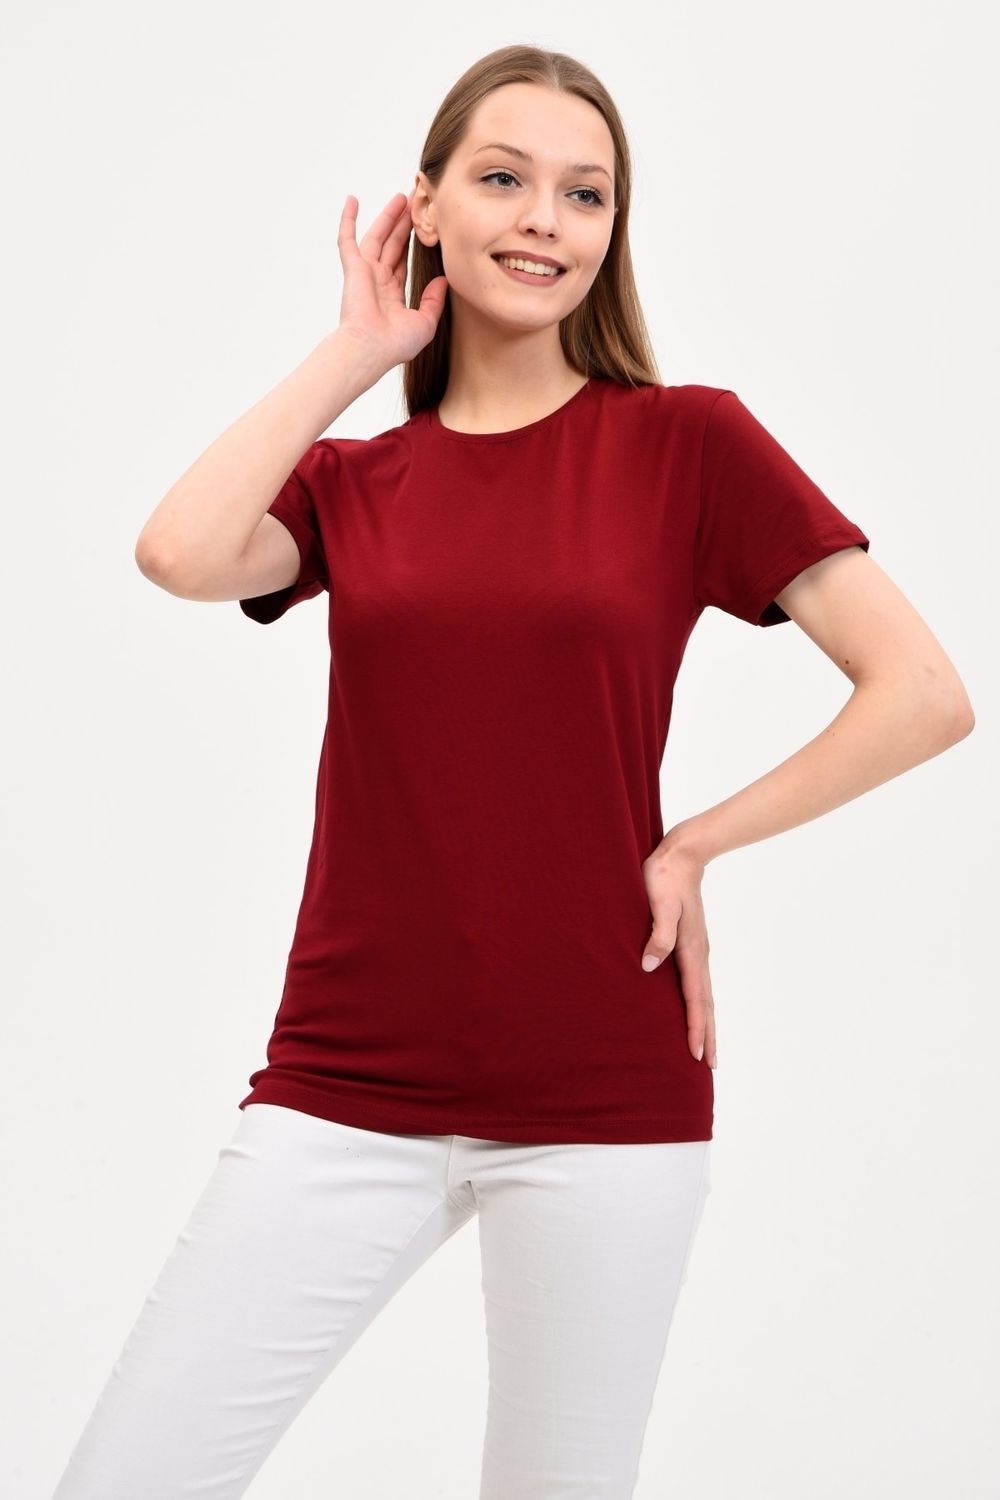 GENIUS Trendyol - Rundhalsausschnitt in Damen-Basic-T-Shirt Weinrot mit